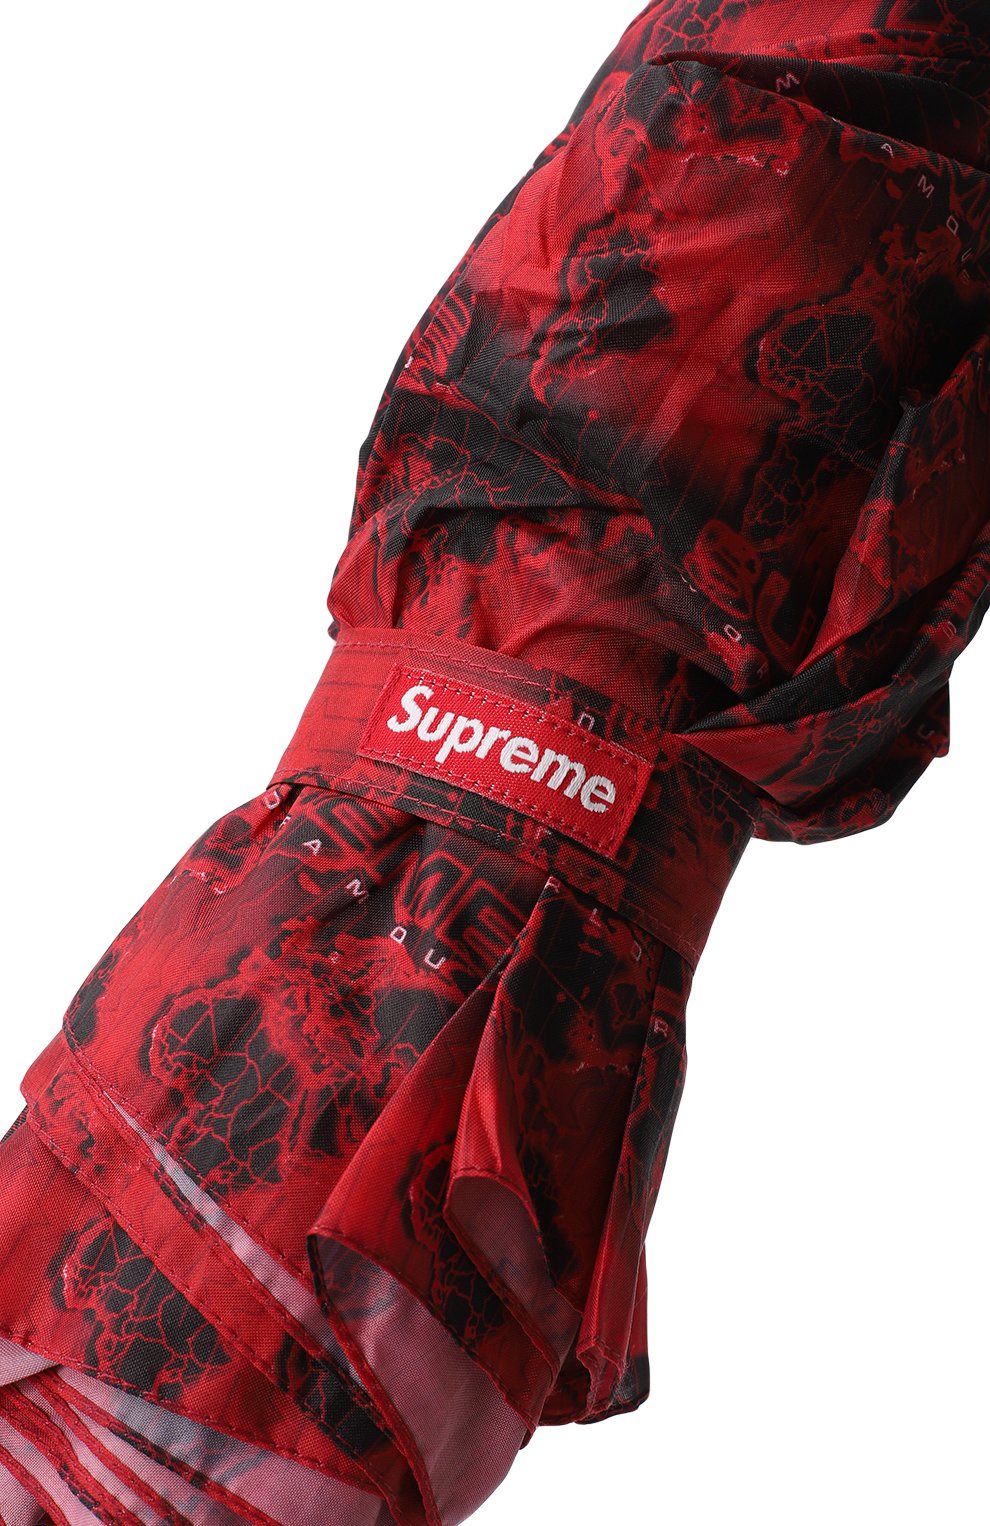 Зонт | Supreme | Красный - 7